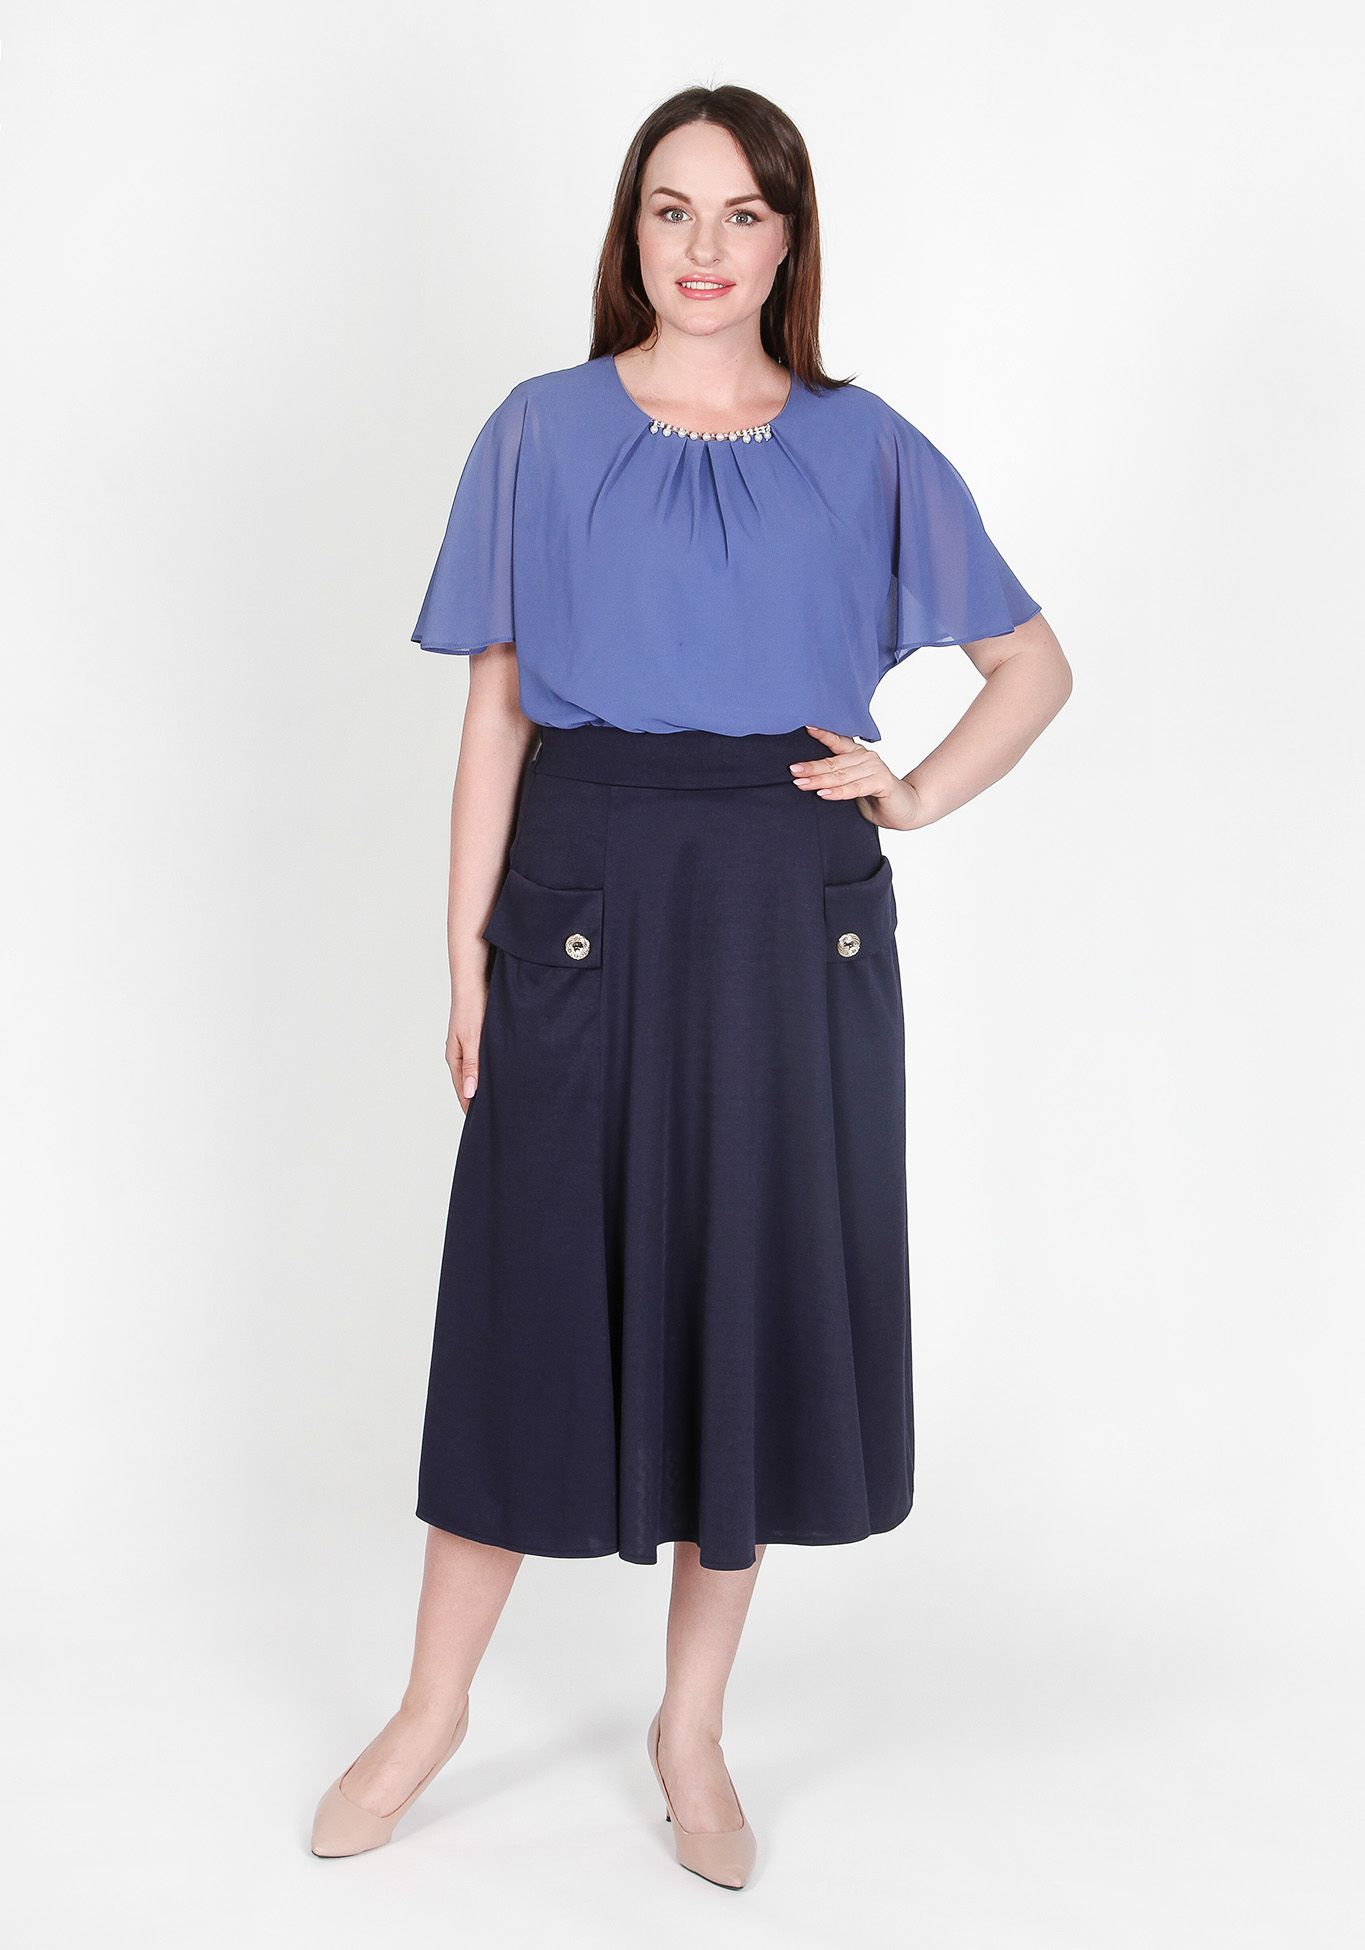 Блуза «Романтичный образ» Zanzara, размер 50, цвет пудровый - фото 4